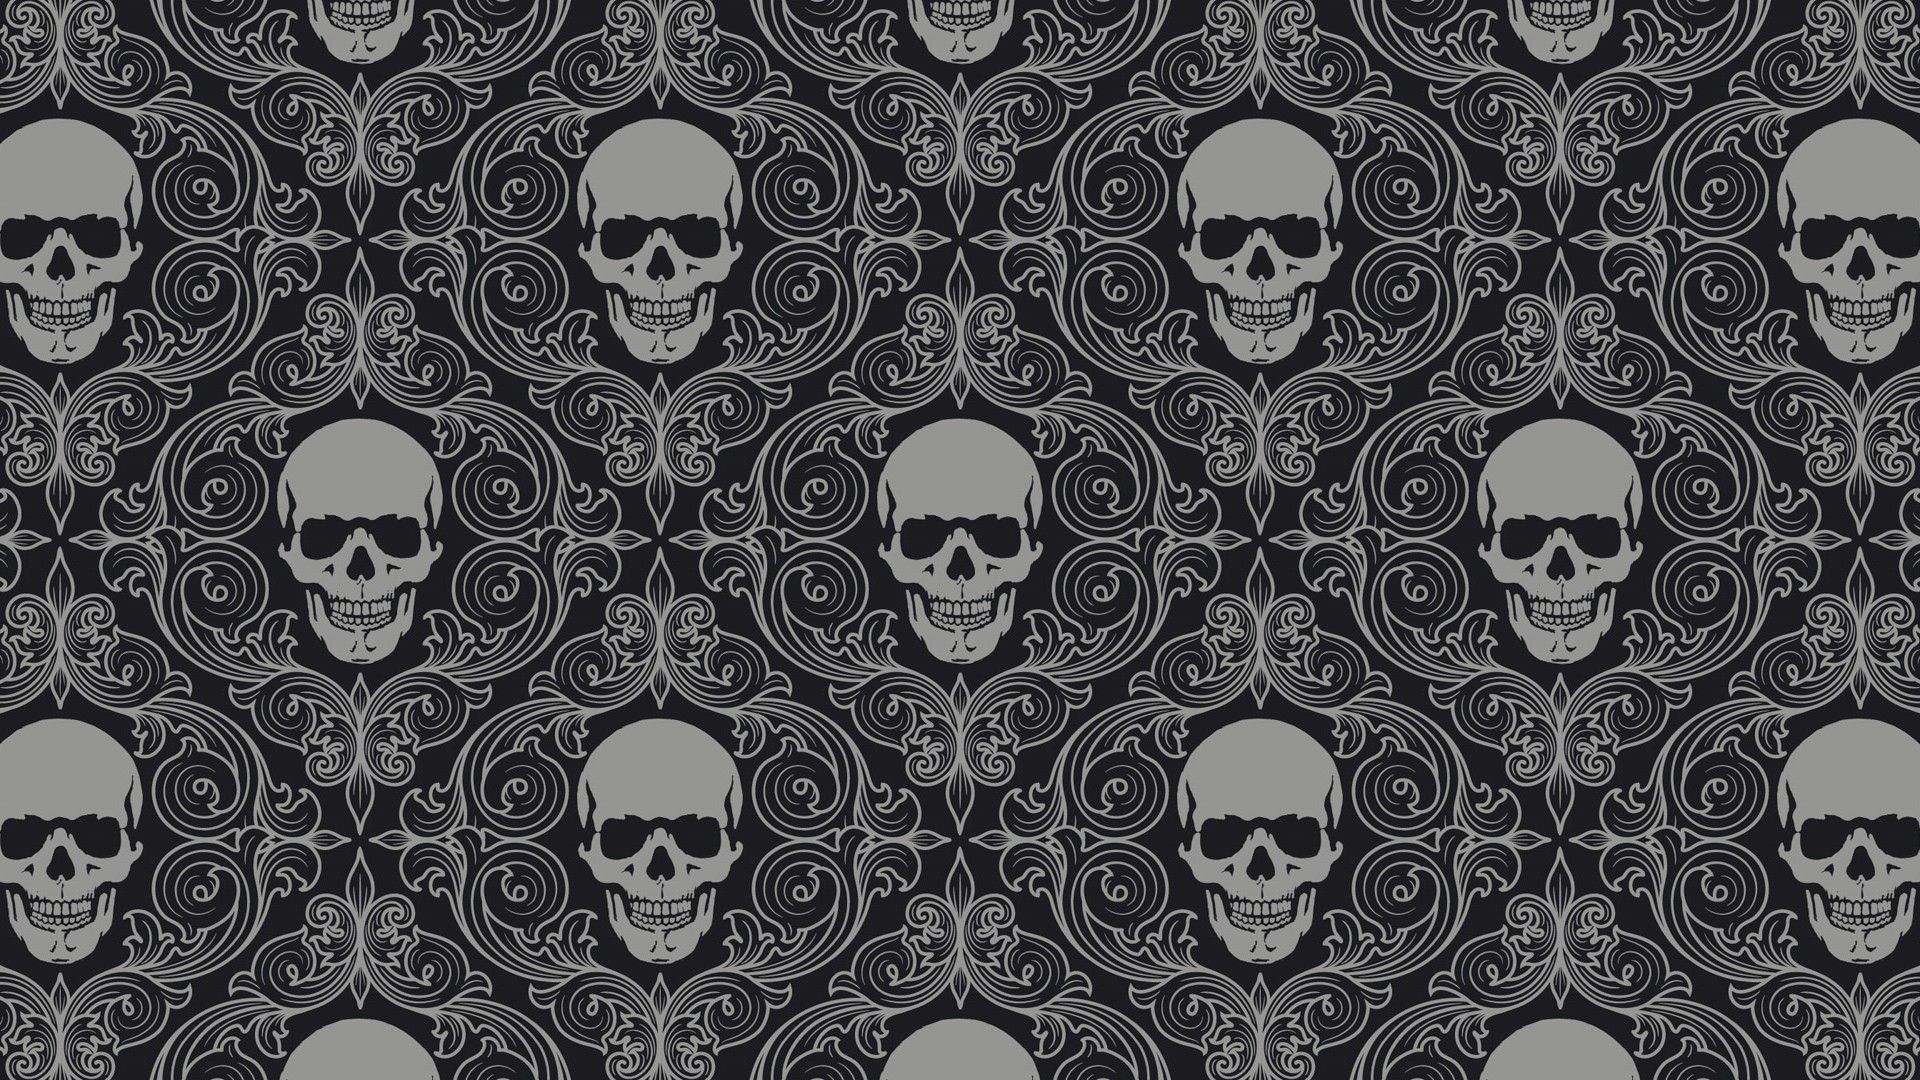 Horror Patterns. Dark horror skulls pattern wallpaperx1080. Skull wallpaper, Skull drawing, Vintage skull